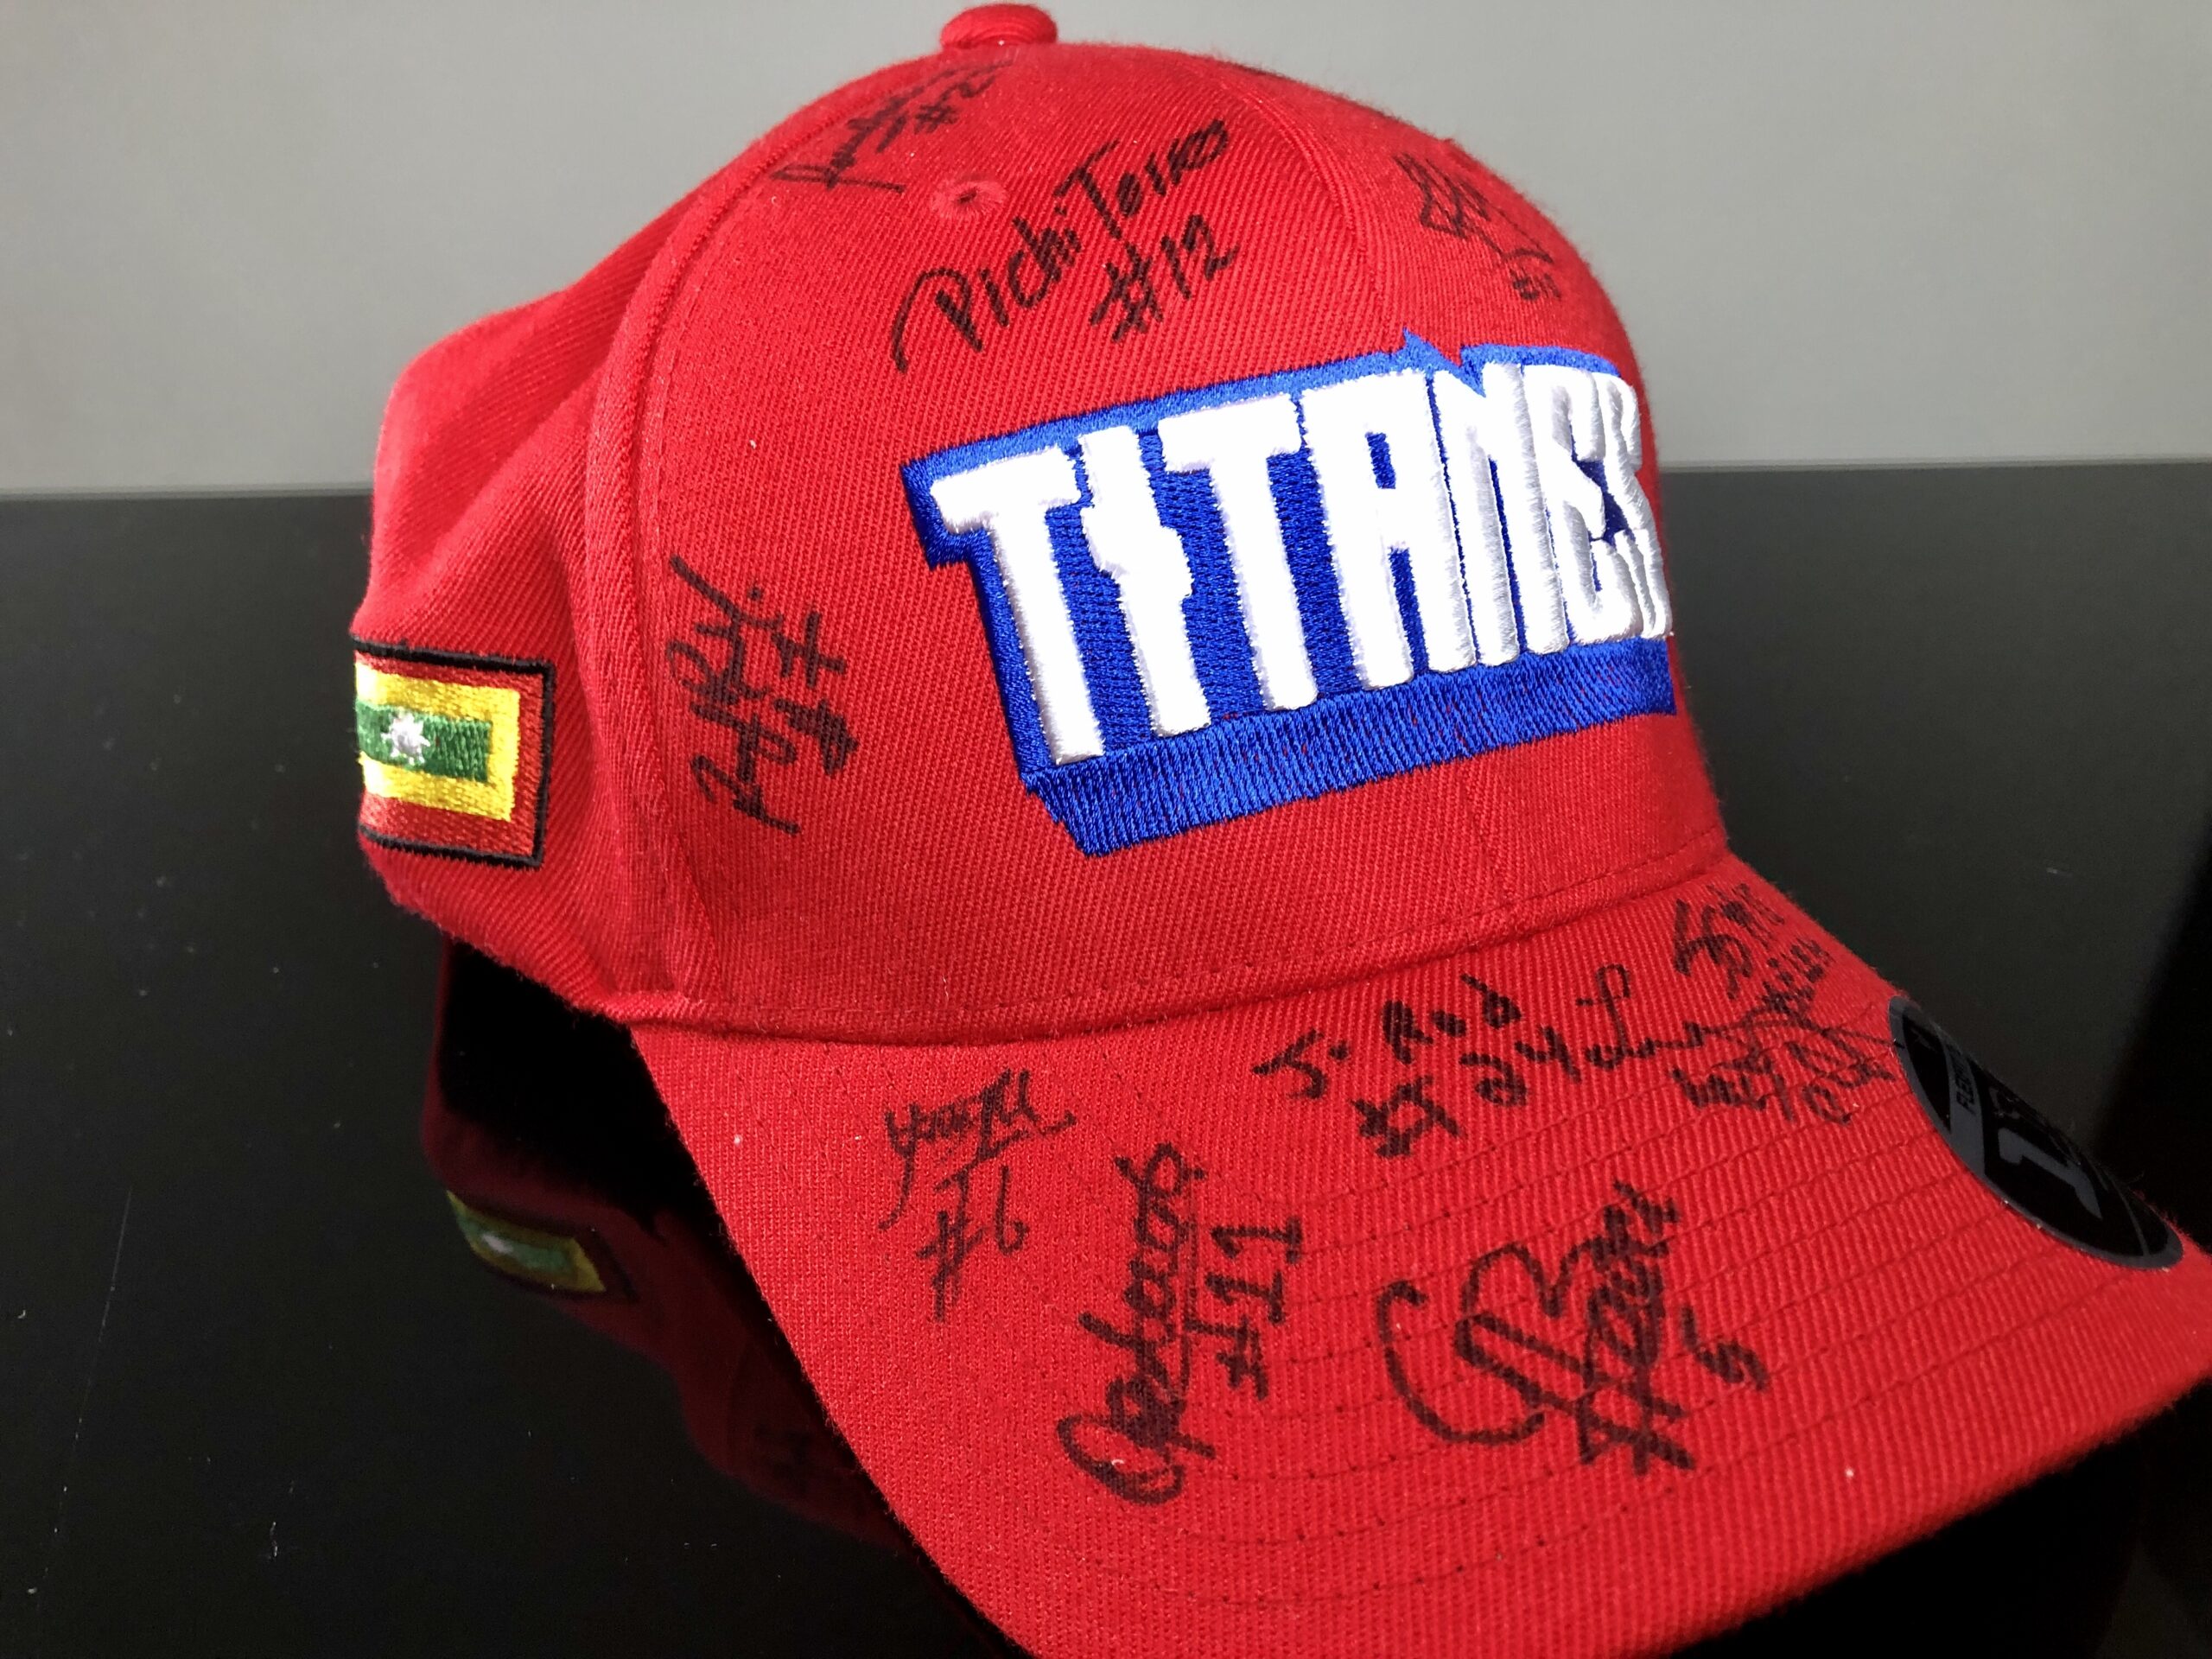 Gana una gorra autografiada por el #TeamTitanes